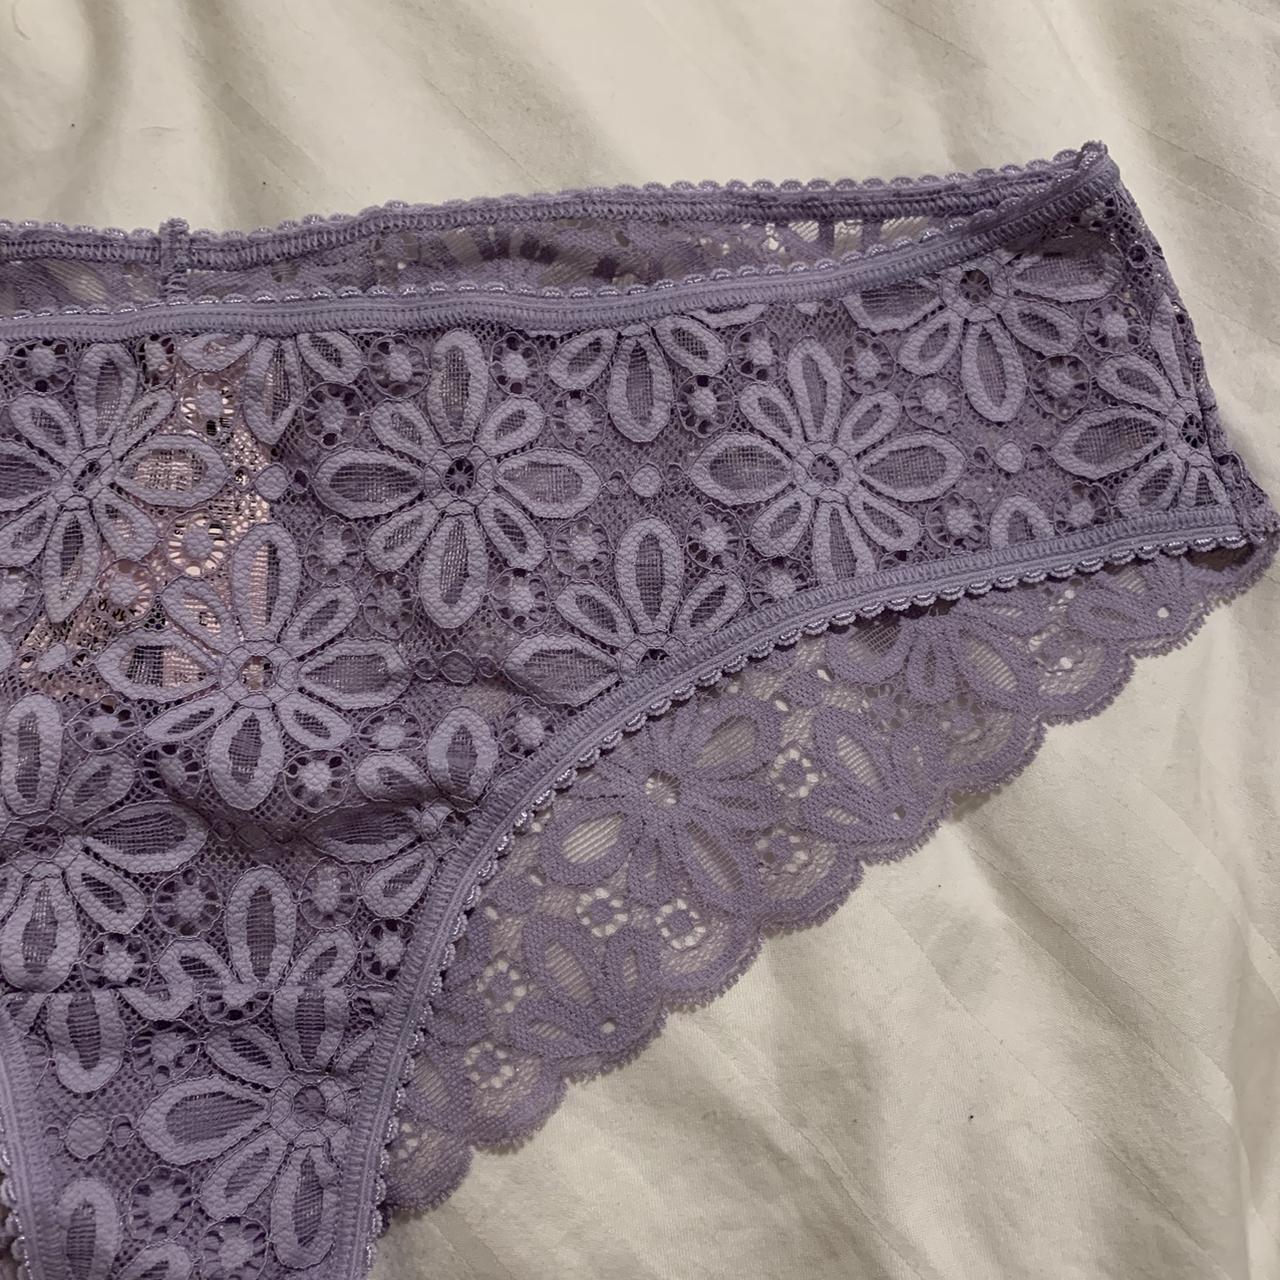 Victoria's Secret Lace Waist Cotton Cheeky Panty - Depop